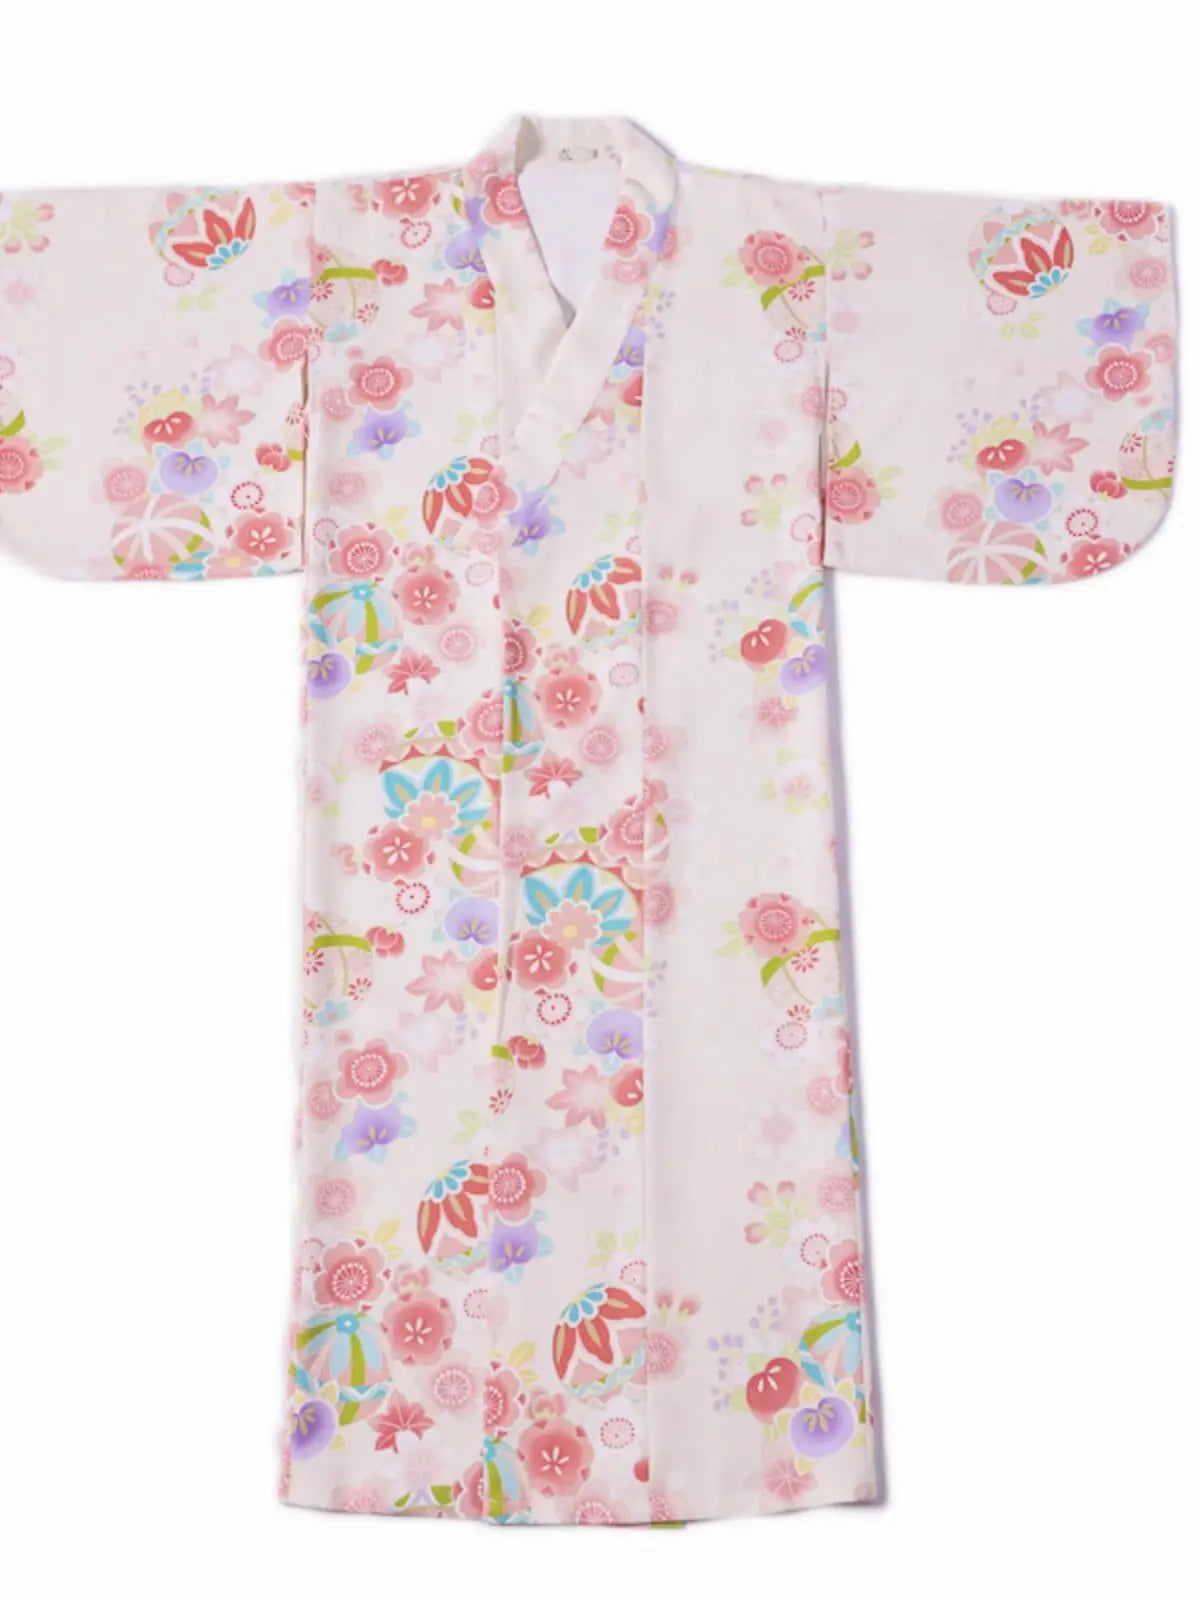 Kimono de mujer floral rosa y crema